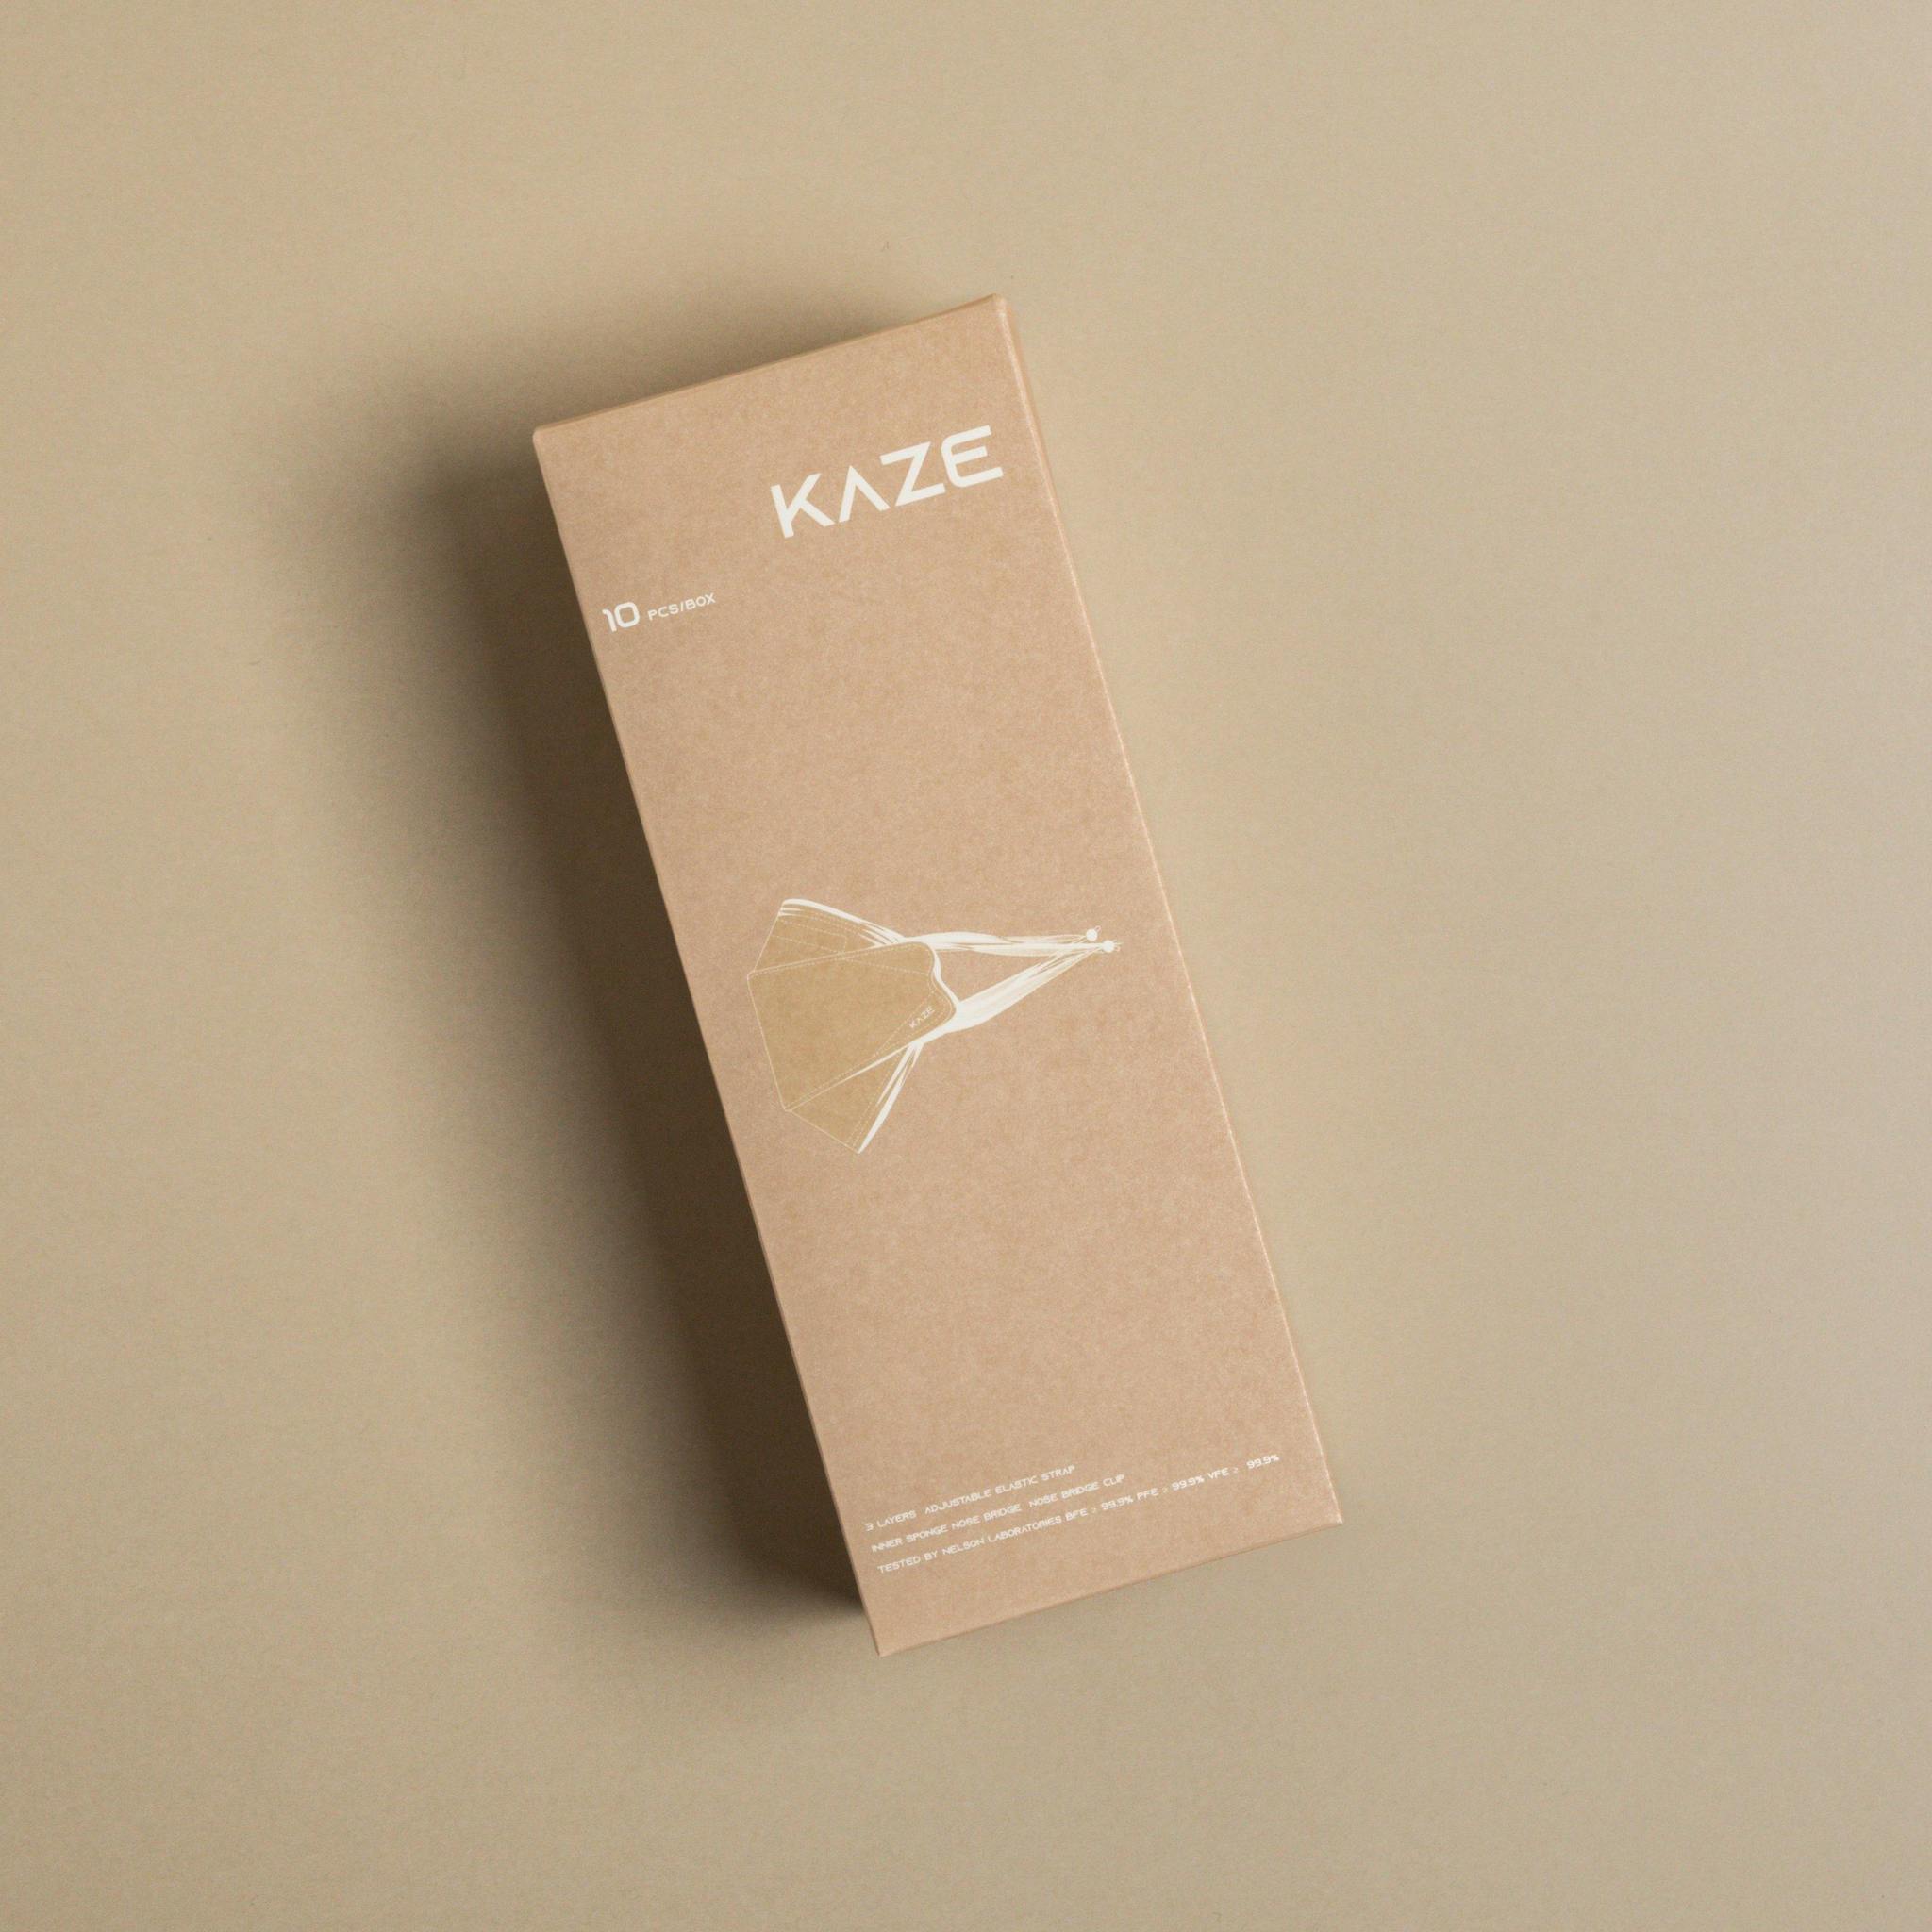 KAZE Masks - Light Individual Series - Natural Sand